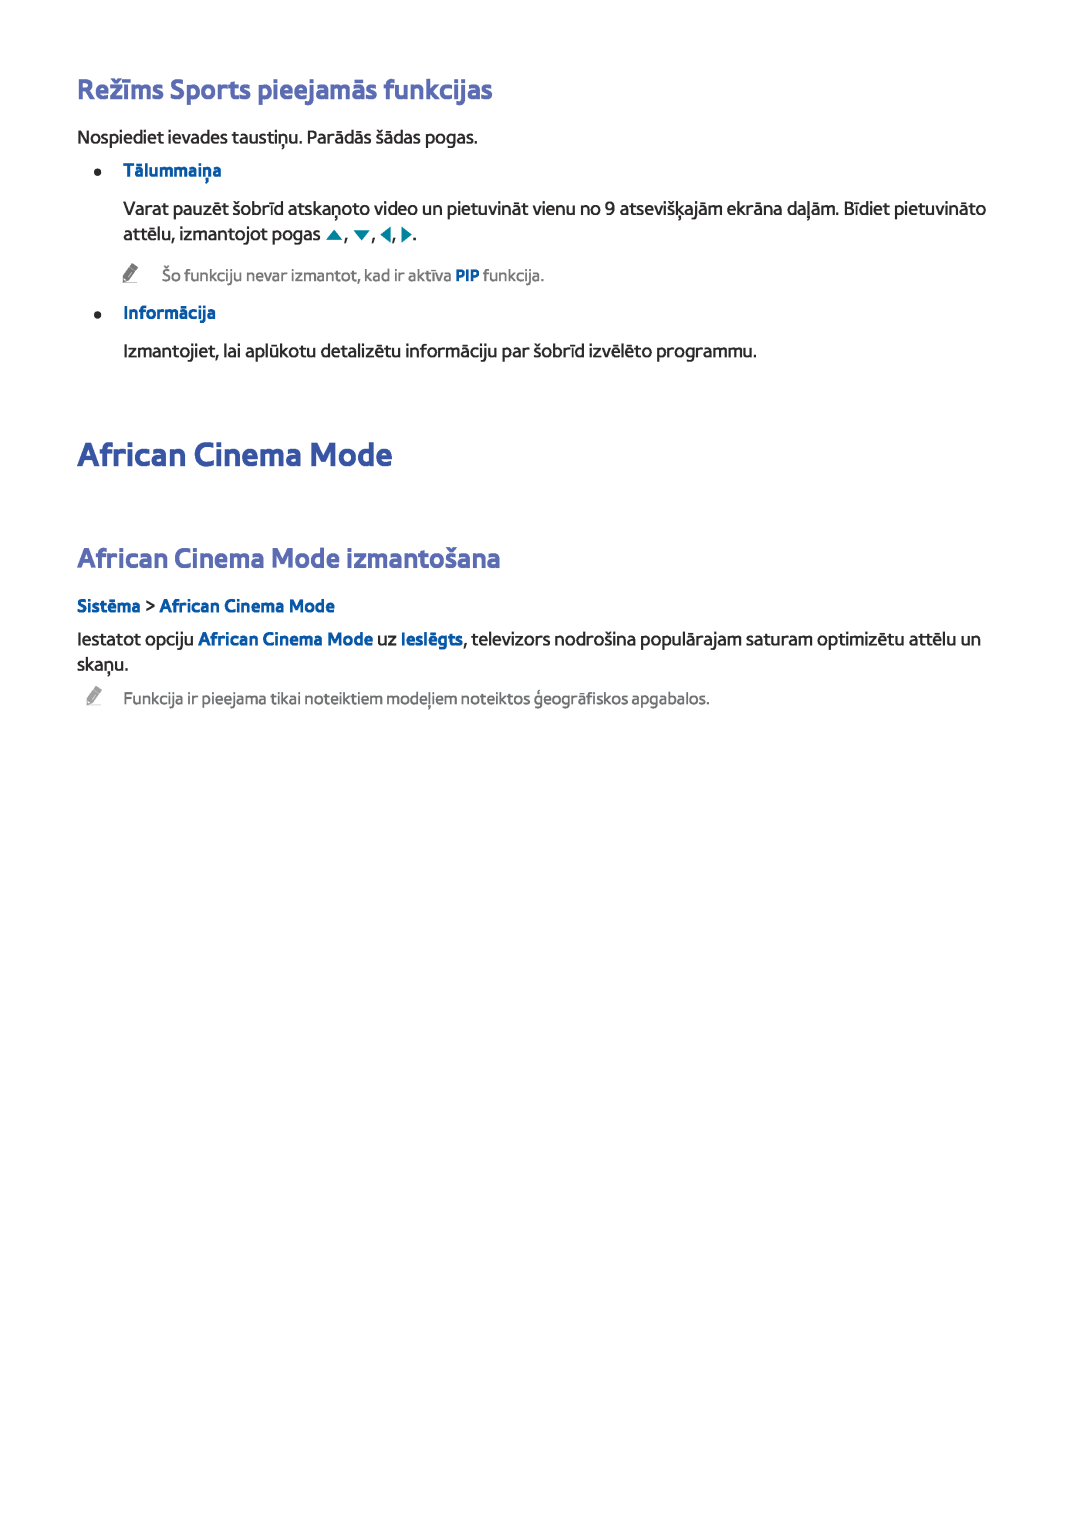 Samsung UE55J6150ASXZG Režīms Sports pieejamās funkcijas, African Cinema Mode izmantošana, Sistēma African Cinema Mode 